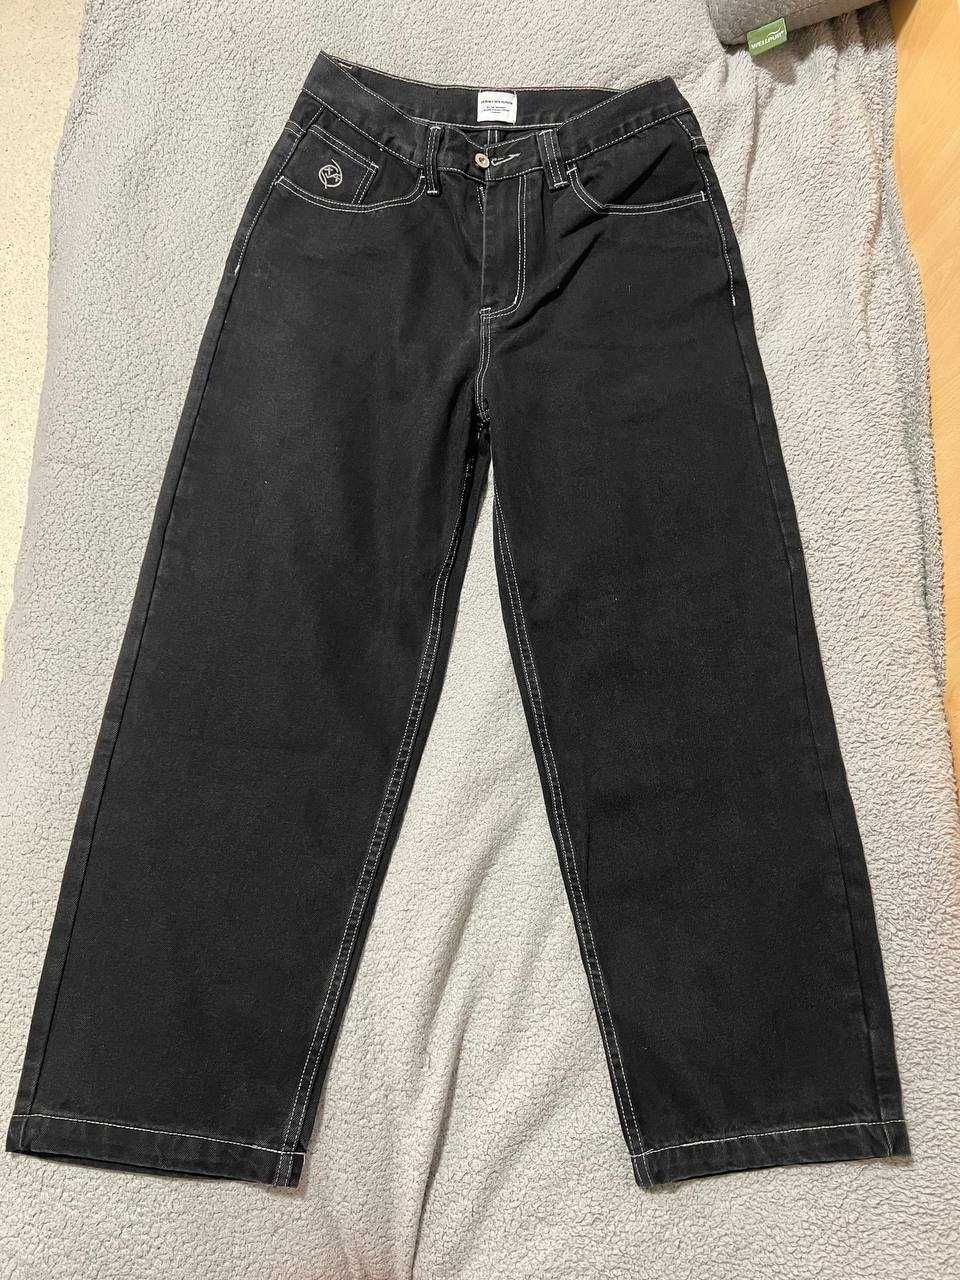 Black Spodnie ( Jeans ) Polar